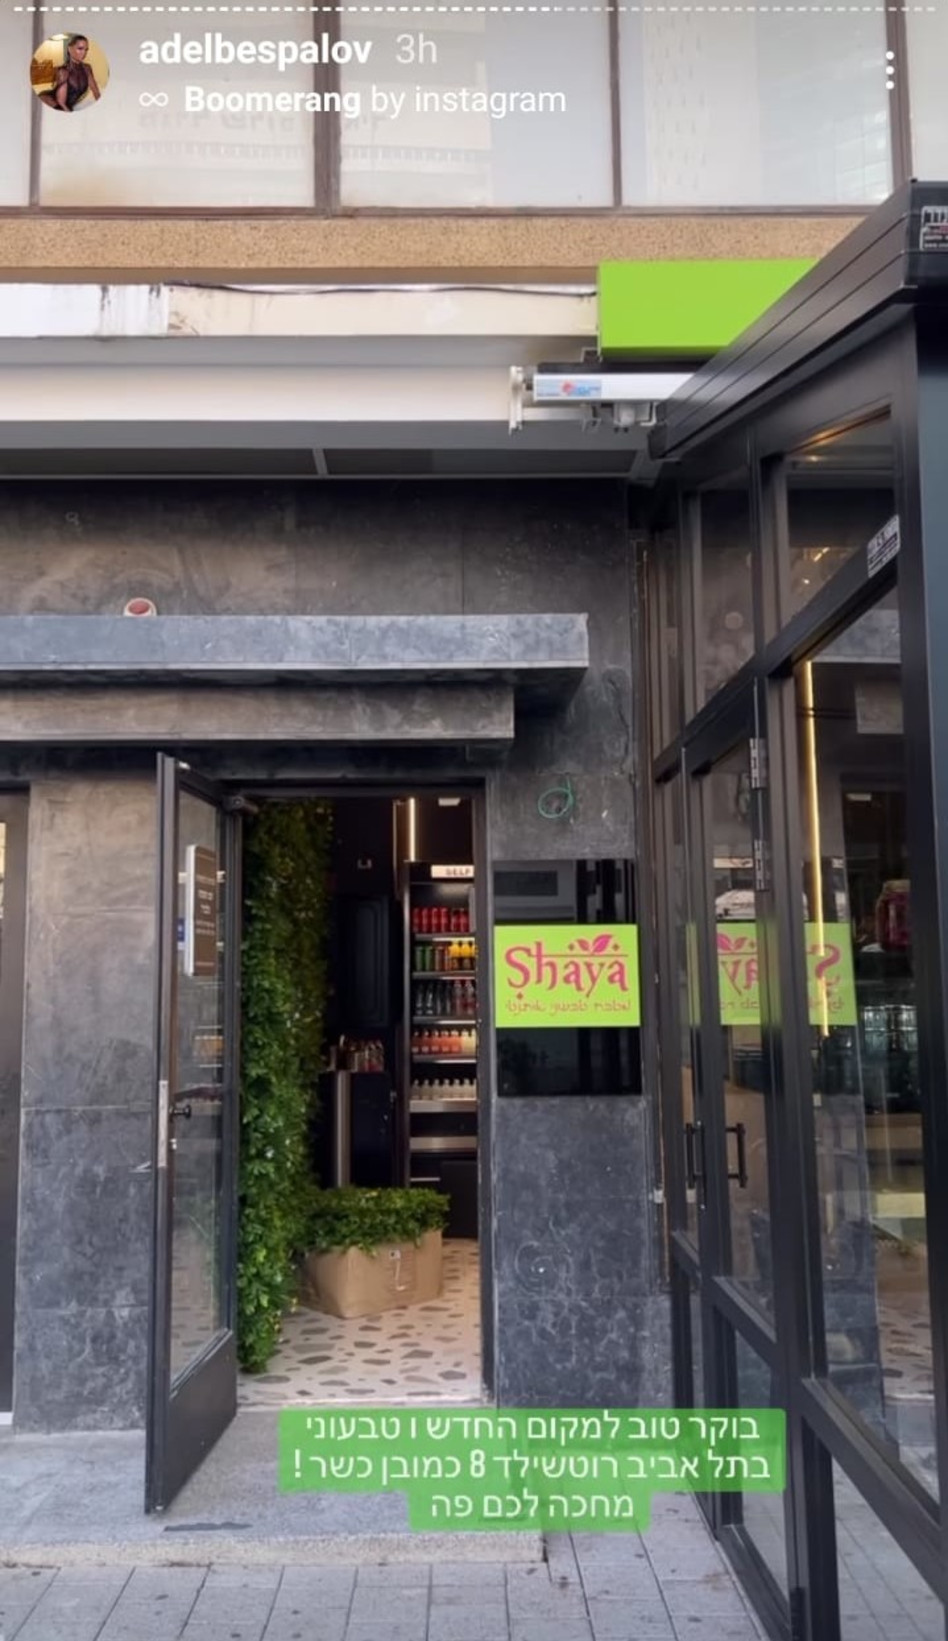 המסעדה החדשה של אדל בספלוב (צילום: צילום מסך אינסטגרם)